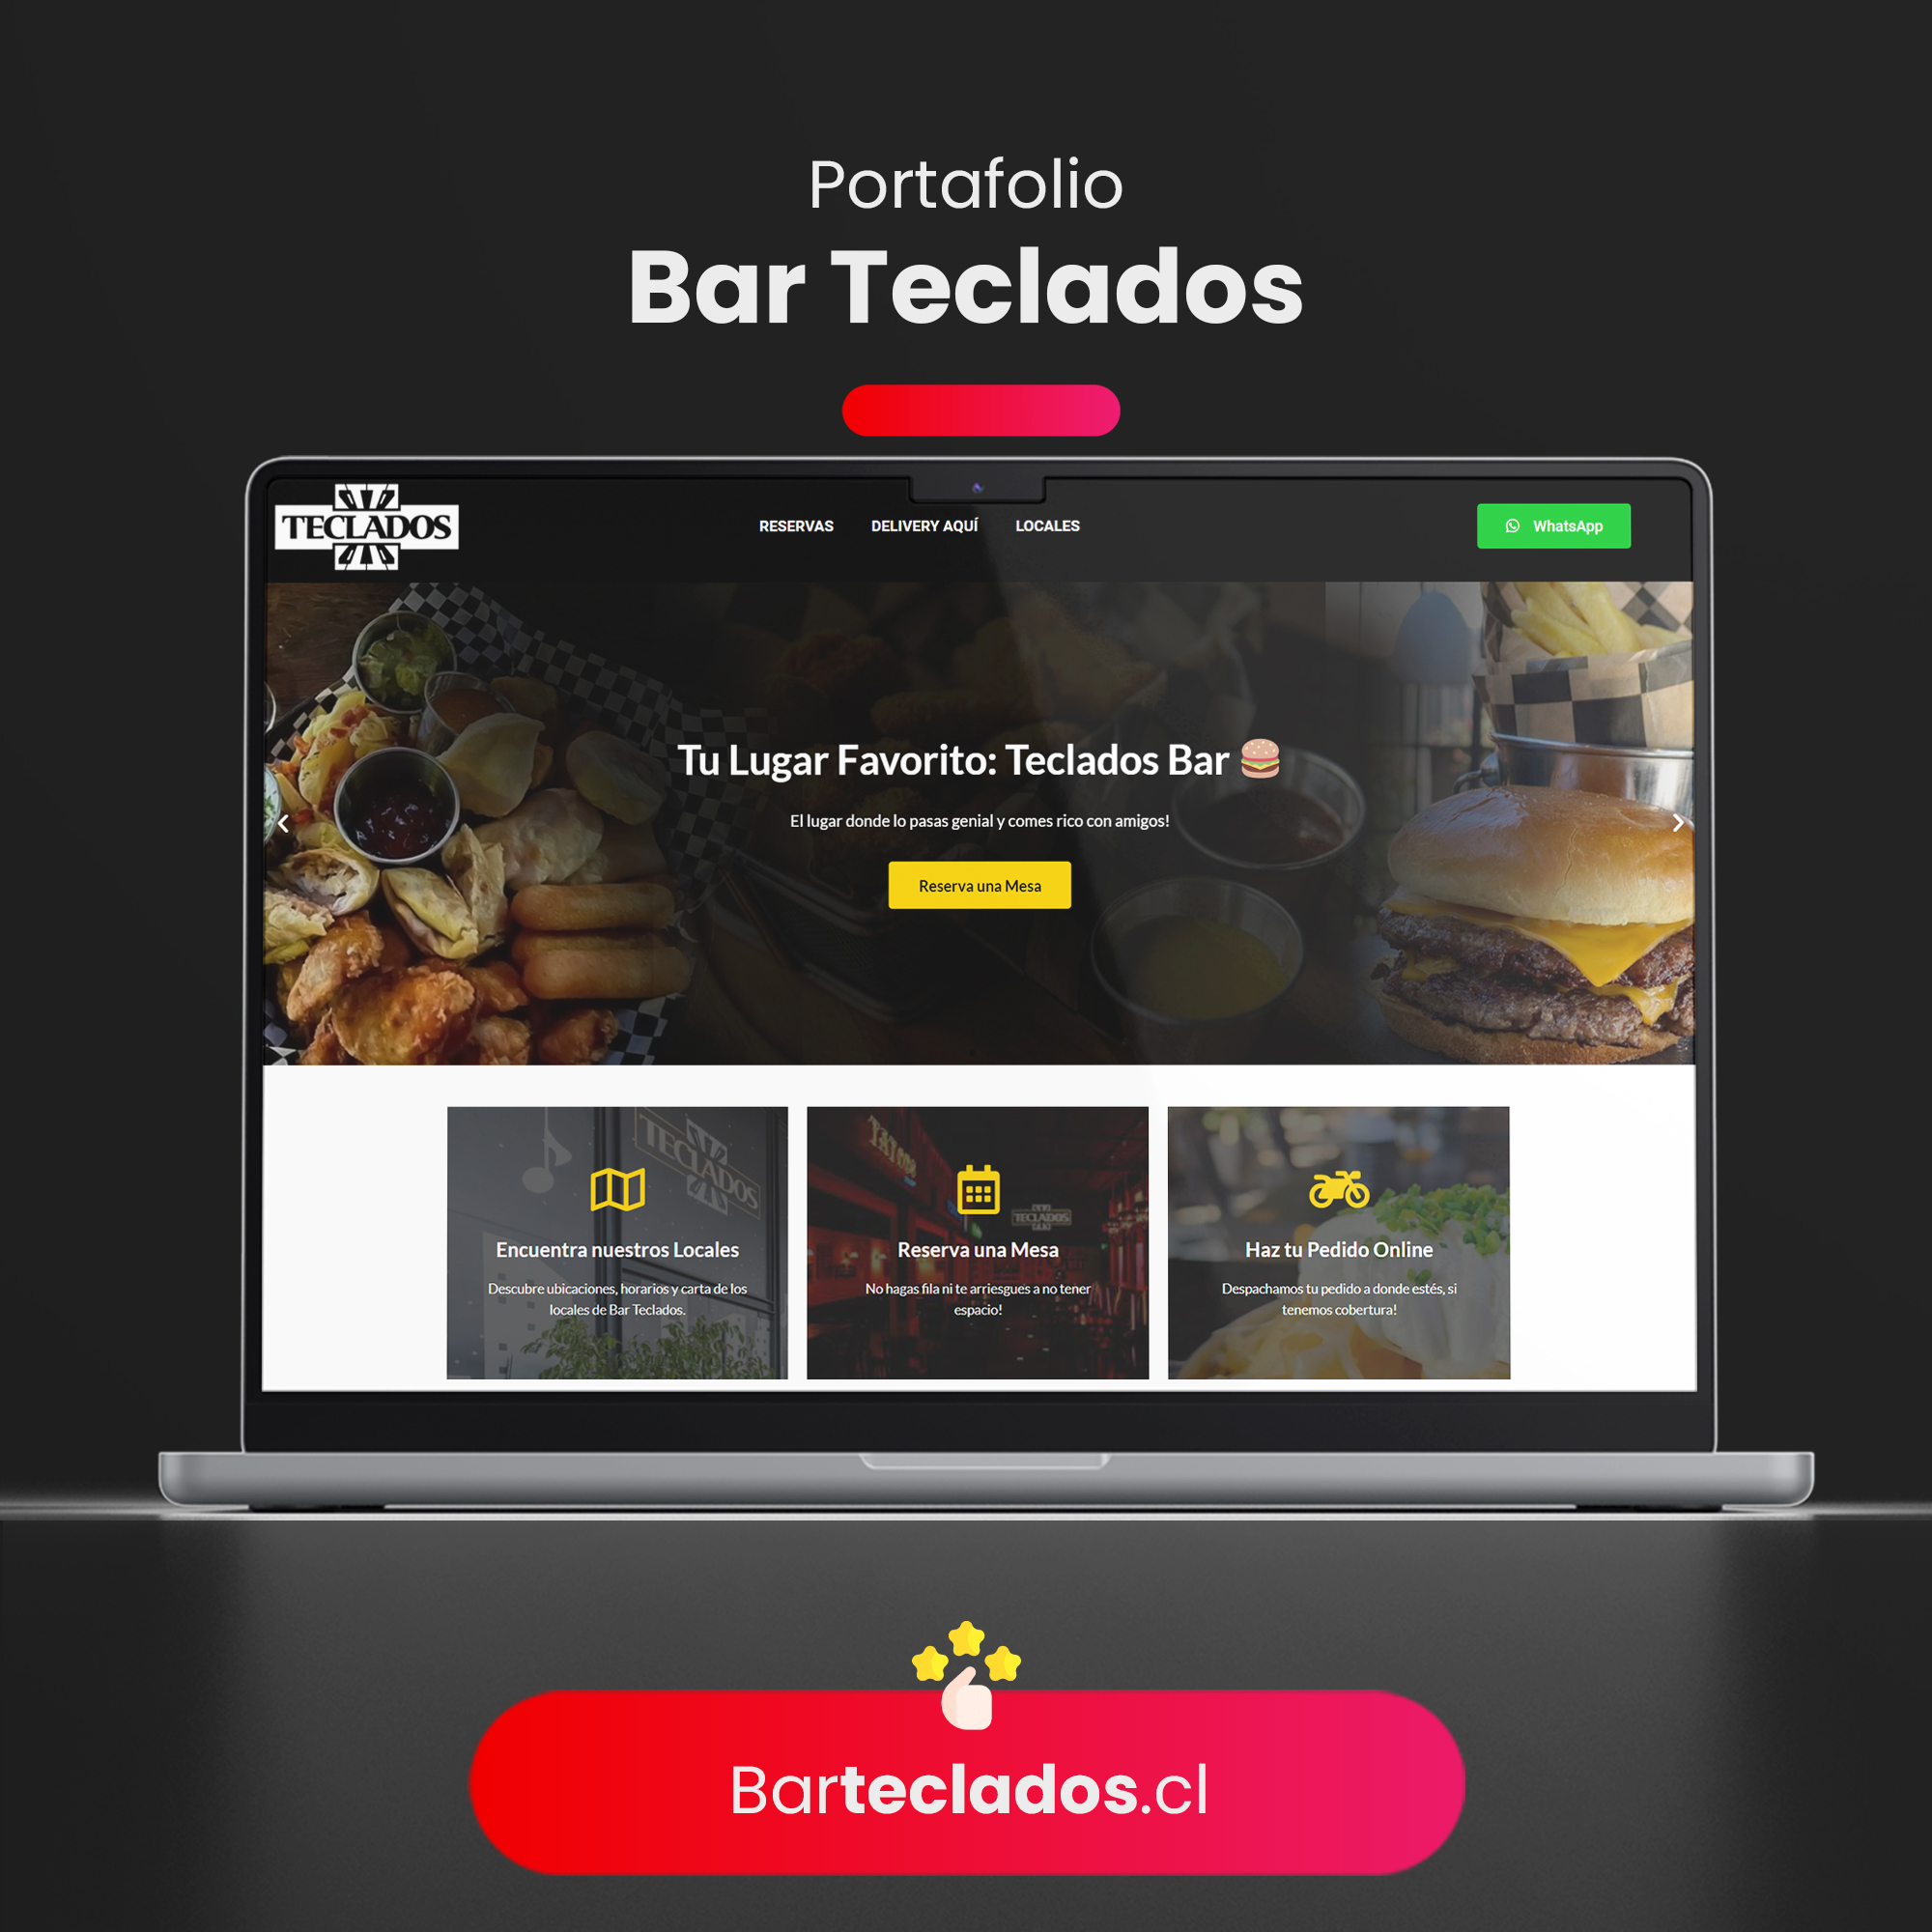 Bar Teclados